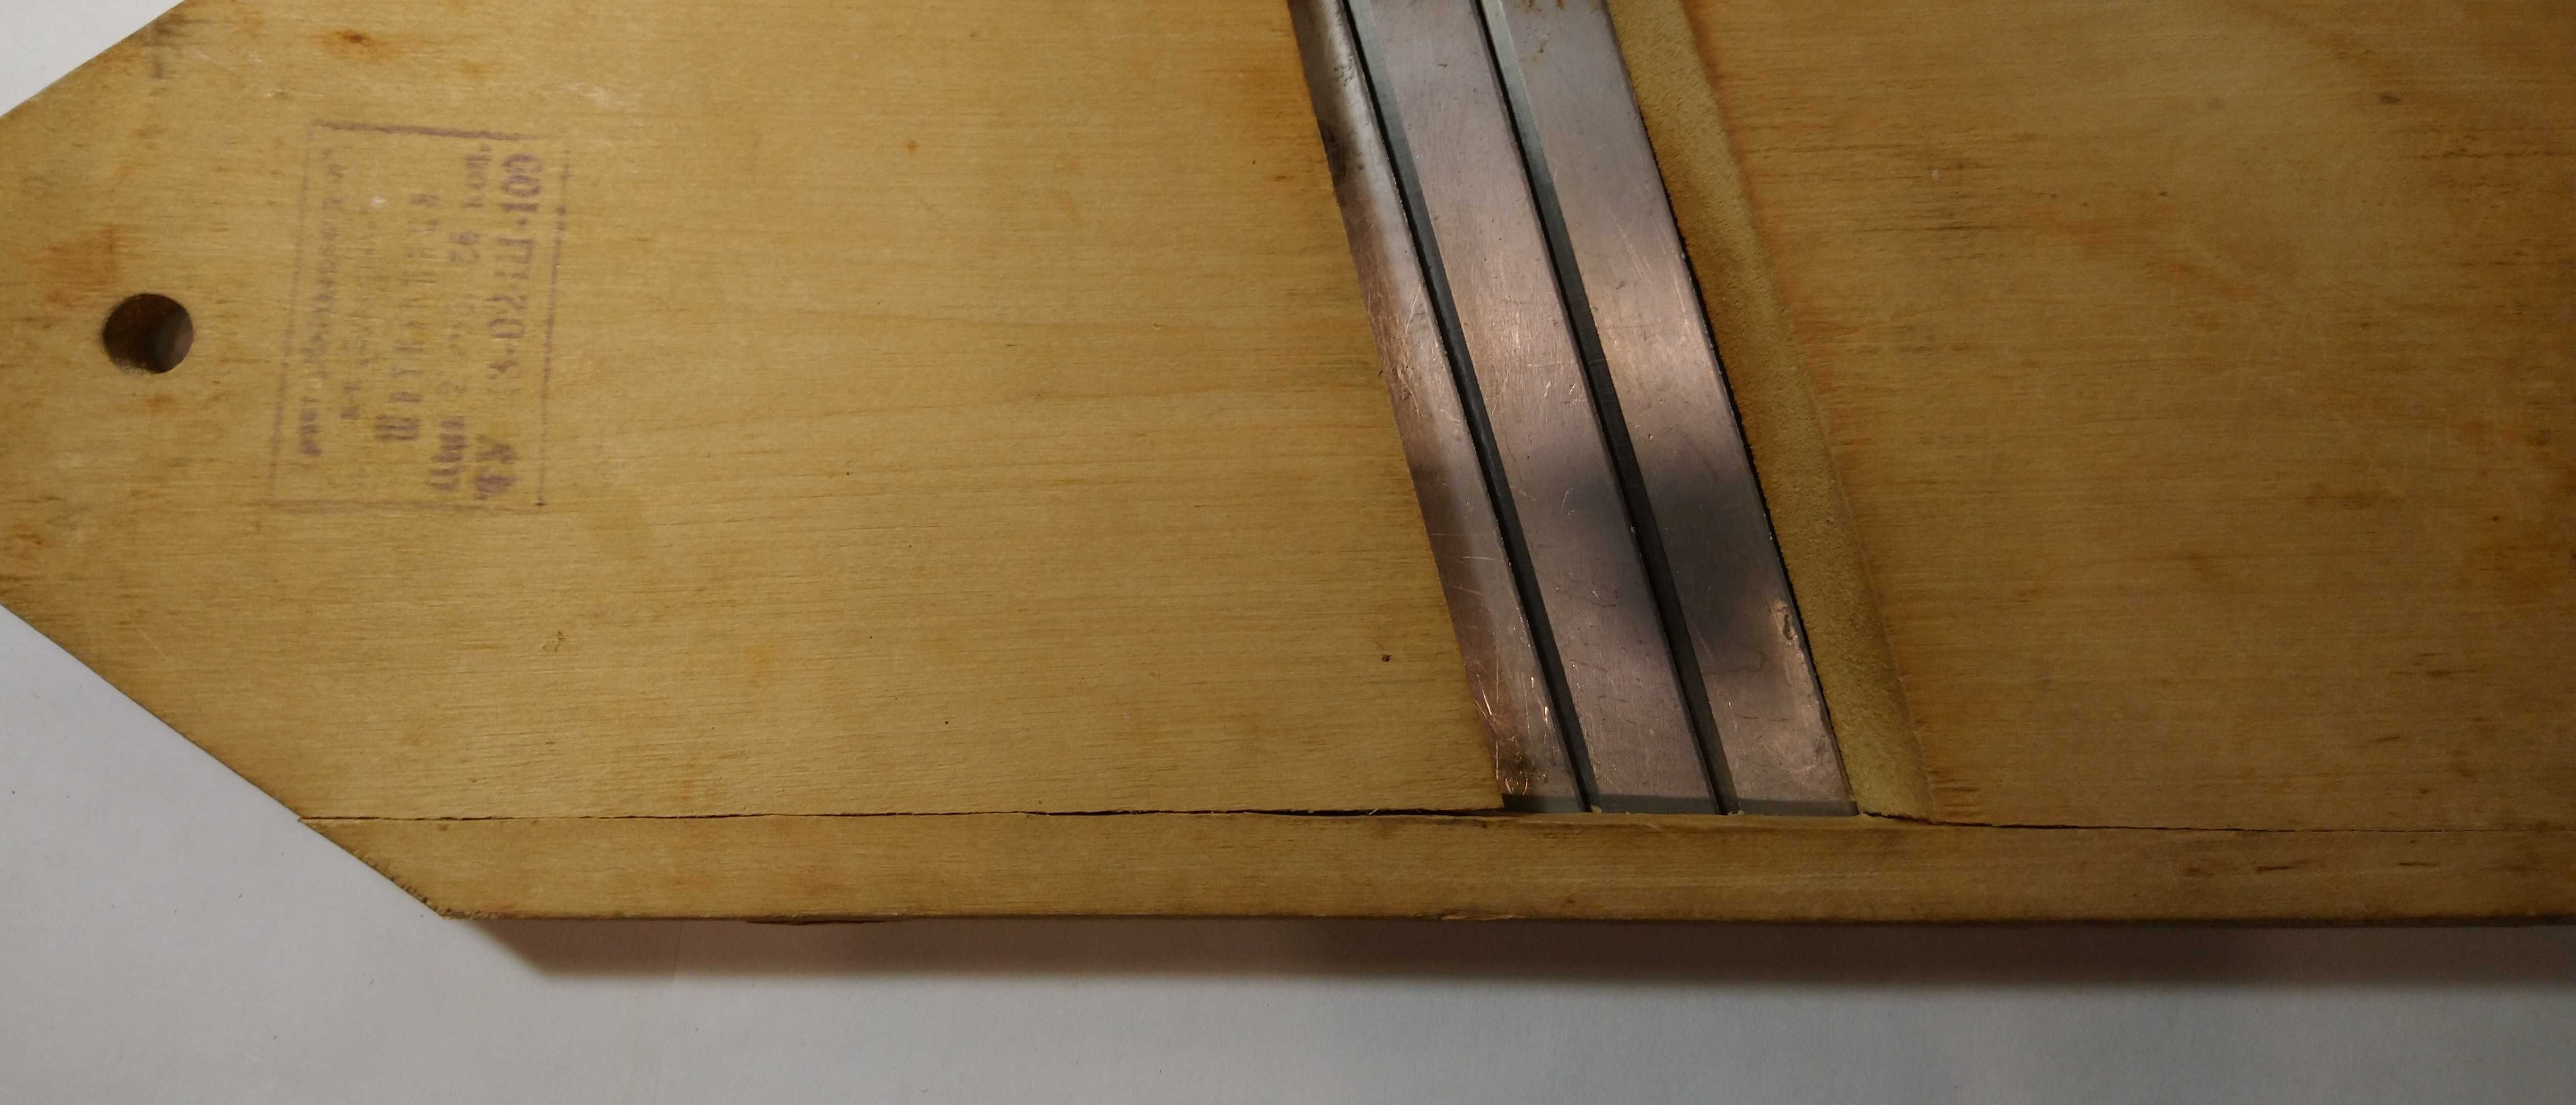 шинковка деревянная со стальными ножами. СССР